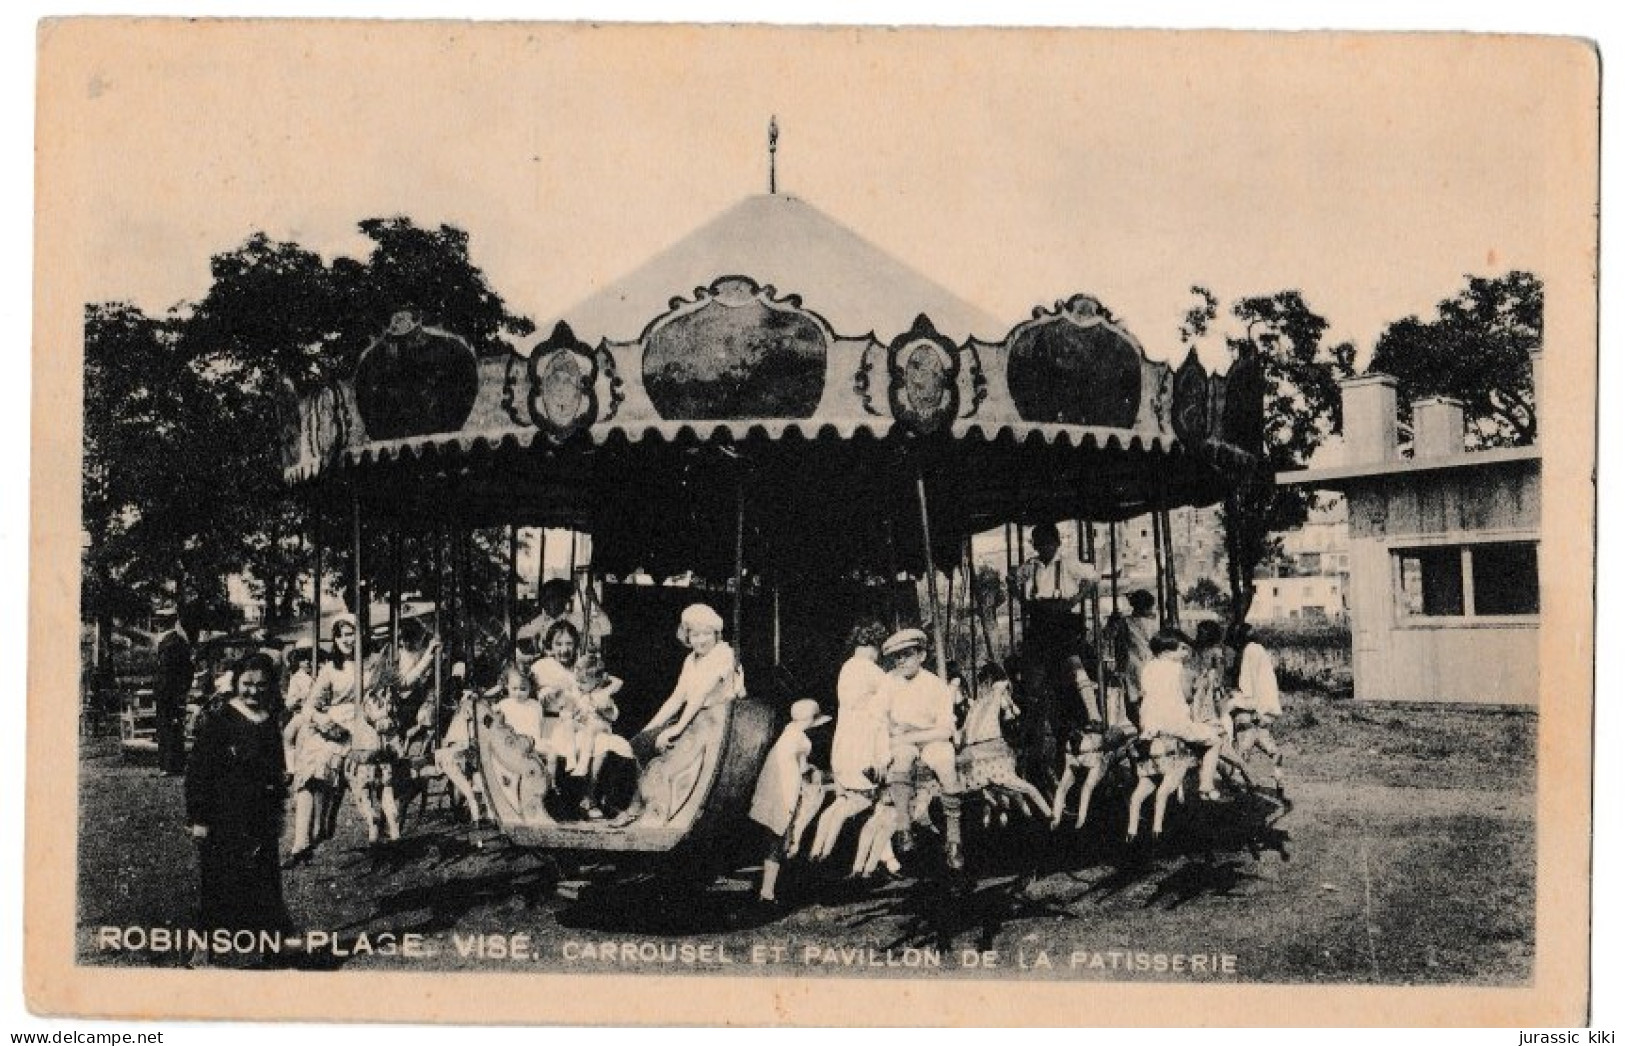 Robinson-Plage, Visé - Carrousel Et Pavillon De La Patisserie - Wezet